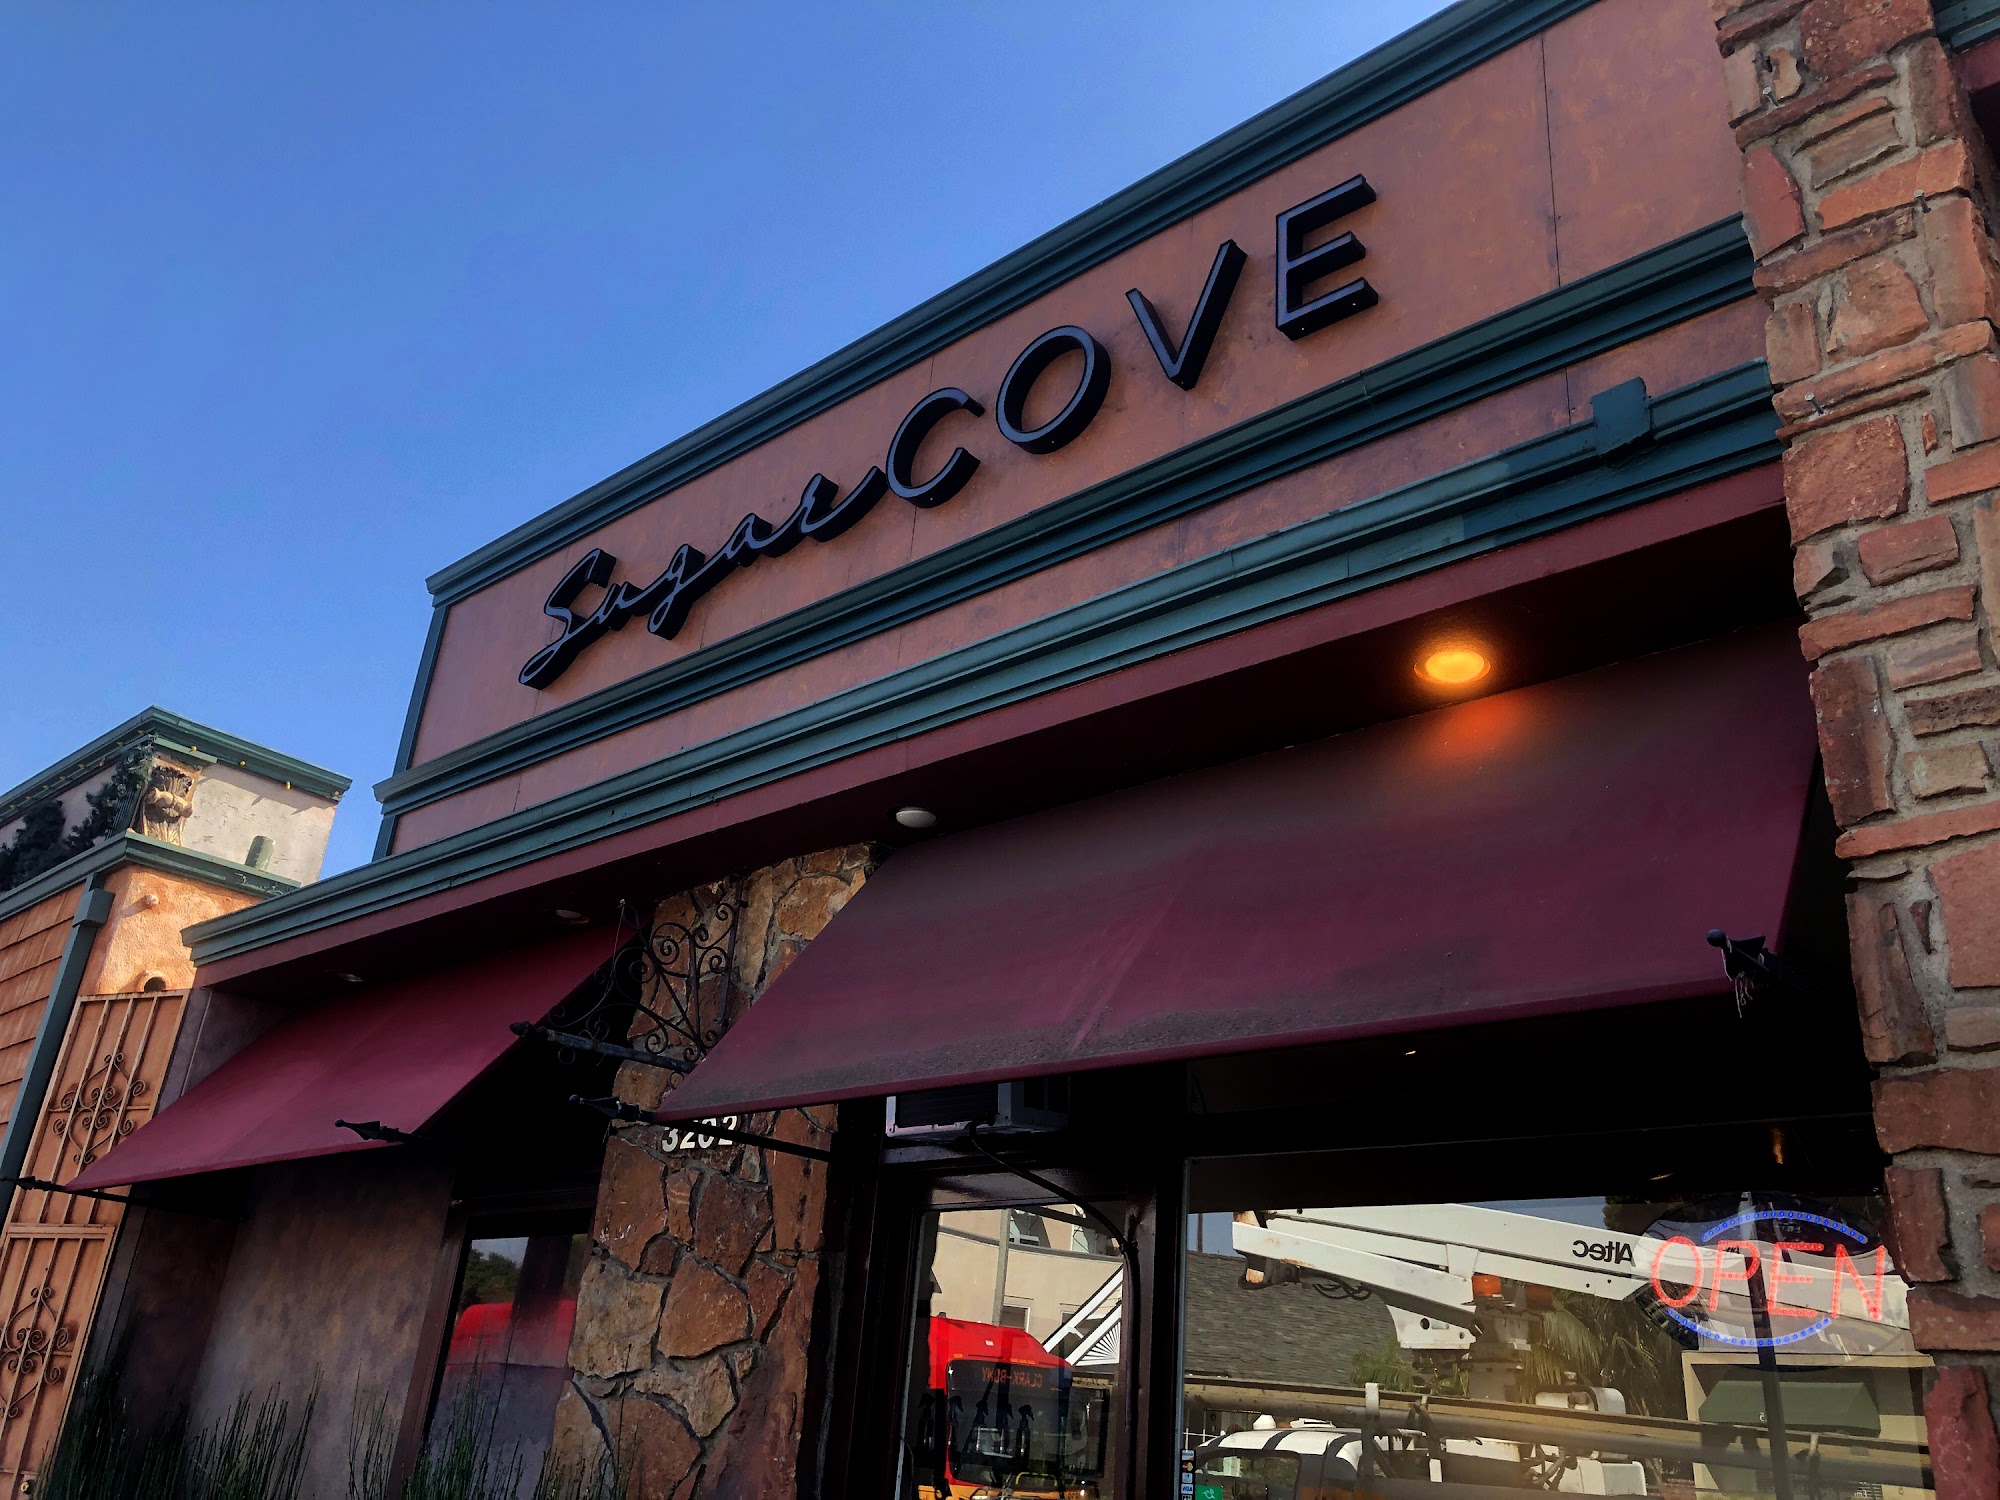 Sugar Cove - Belmont Shore in Long Beach